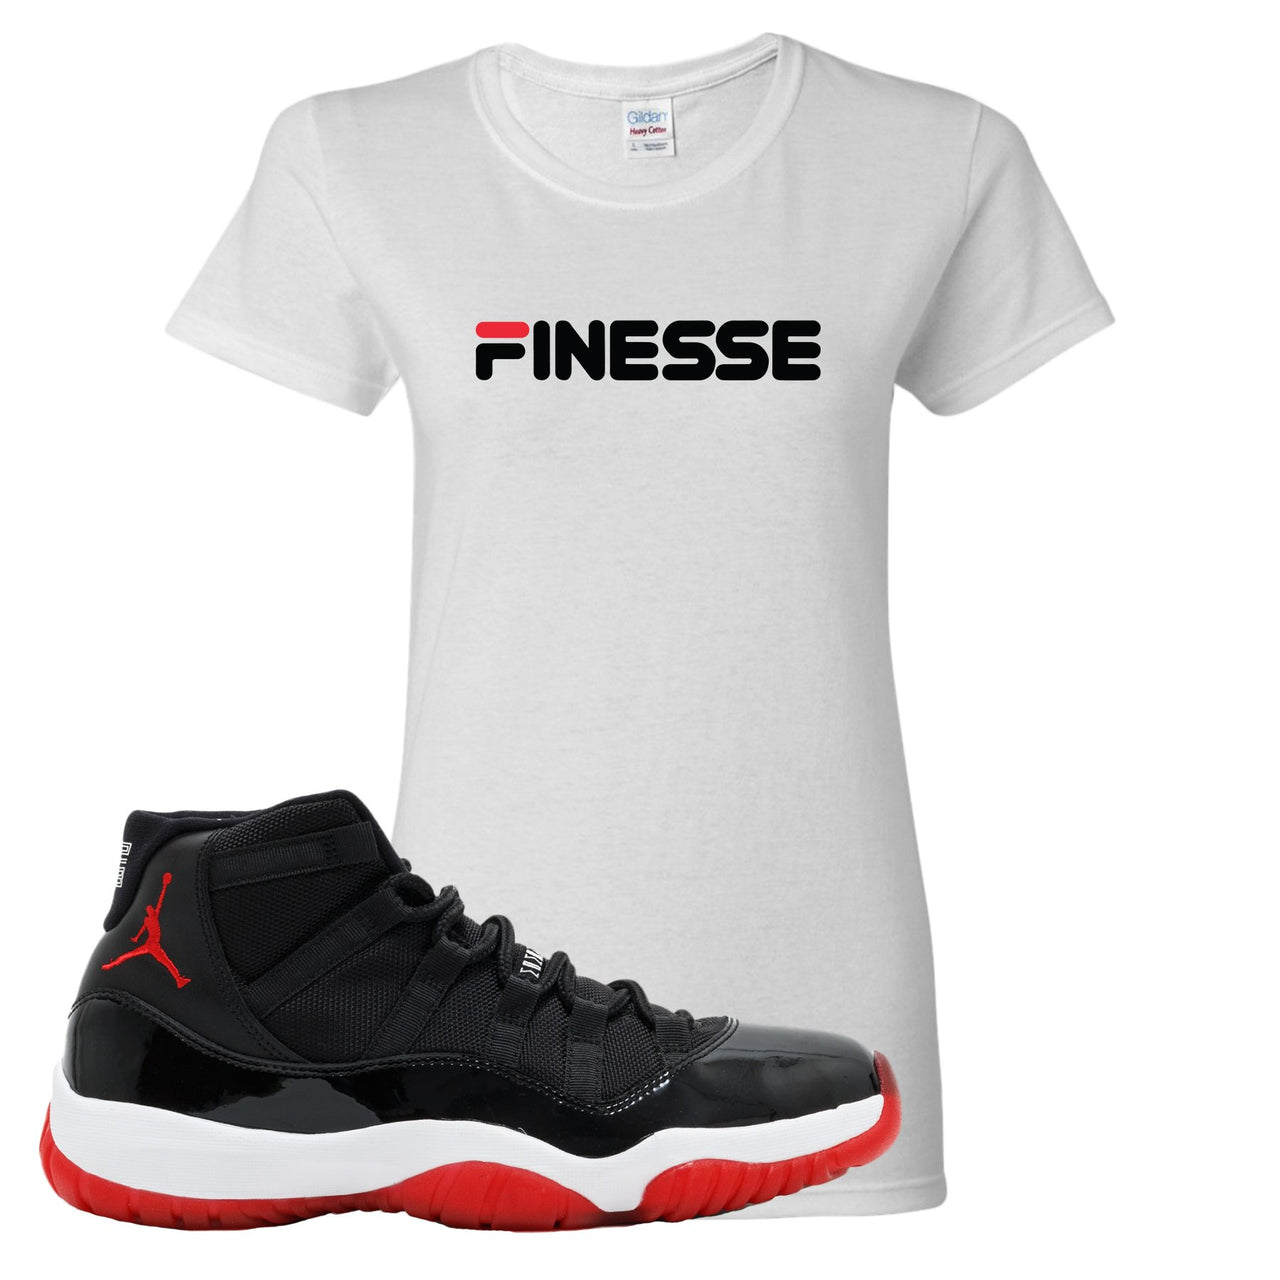 Jordan 11 Bred Finesse White Sneaker Hook Up Women's T-Shirt